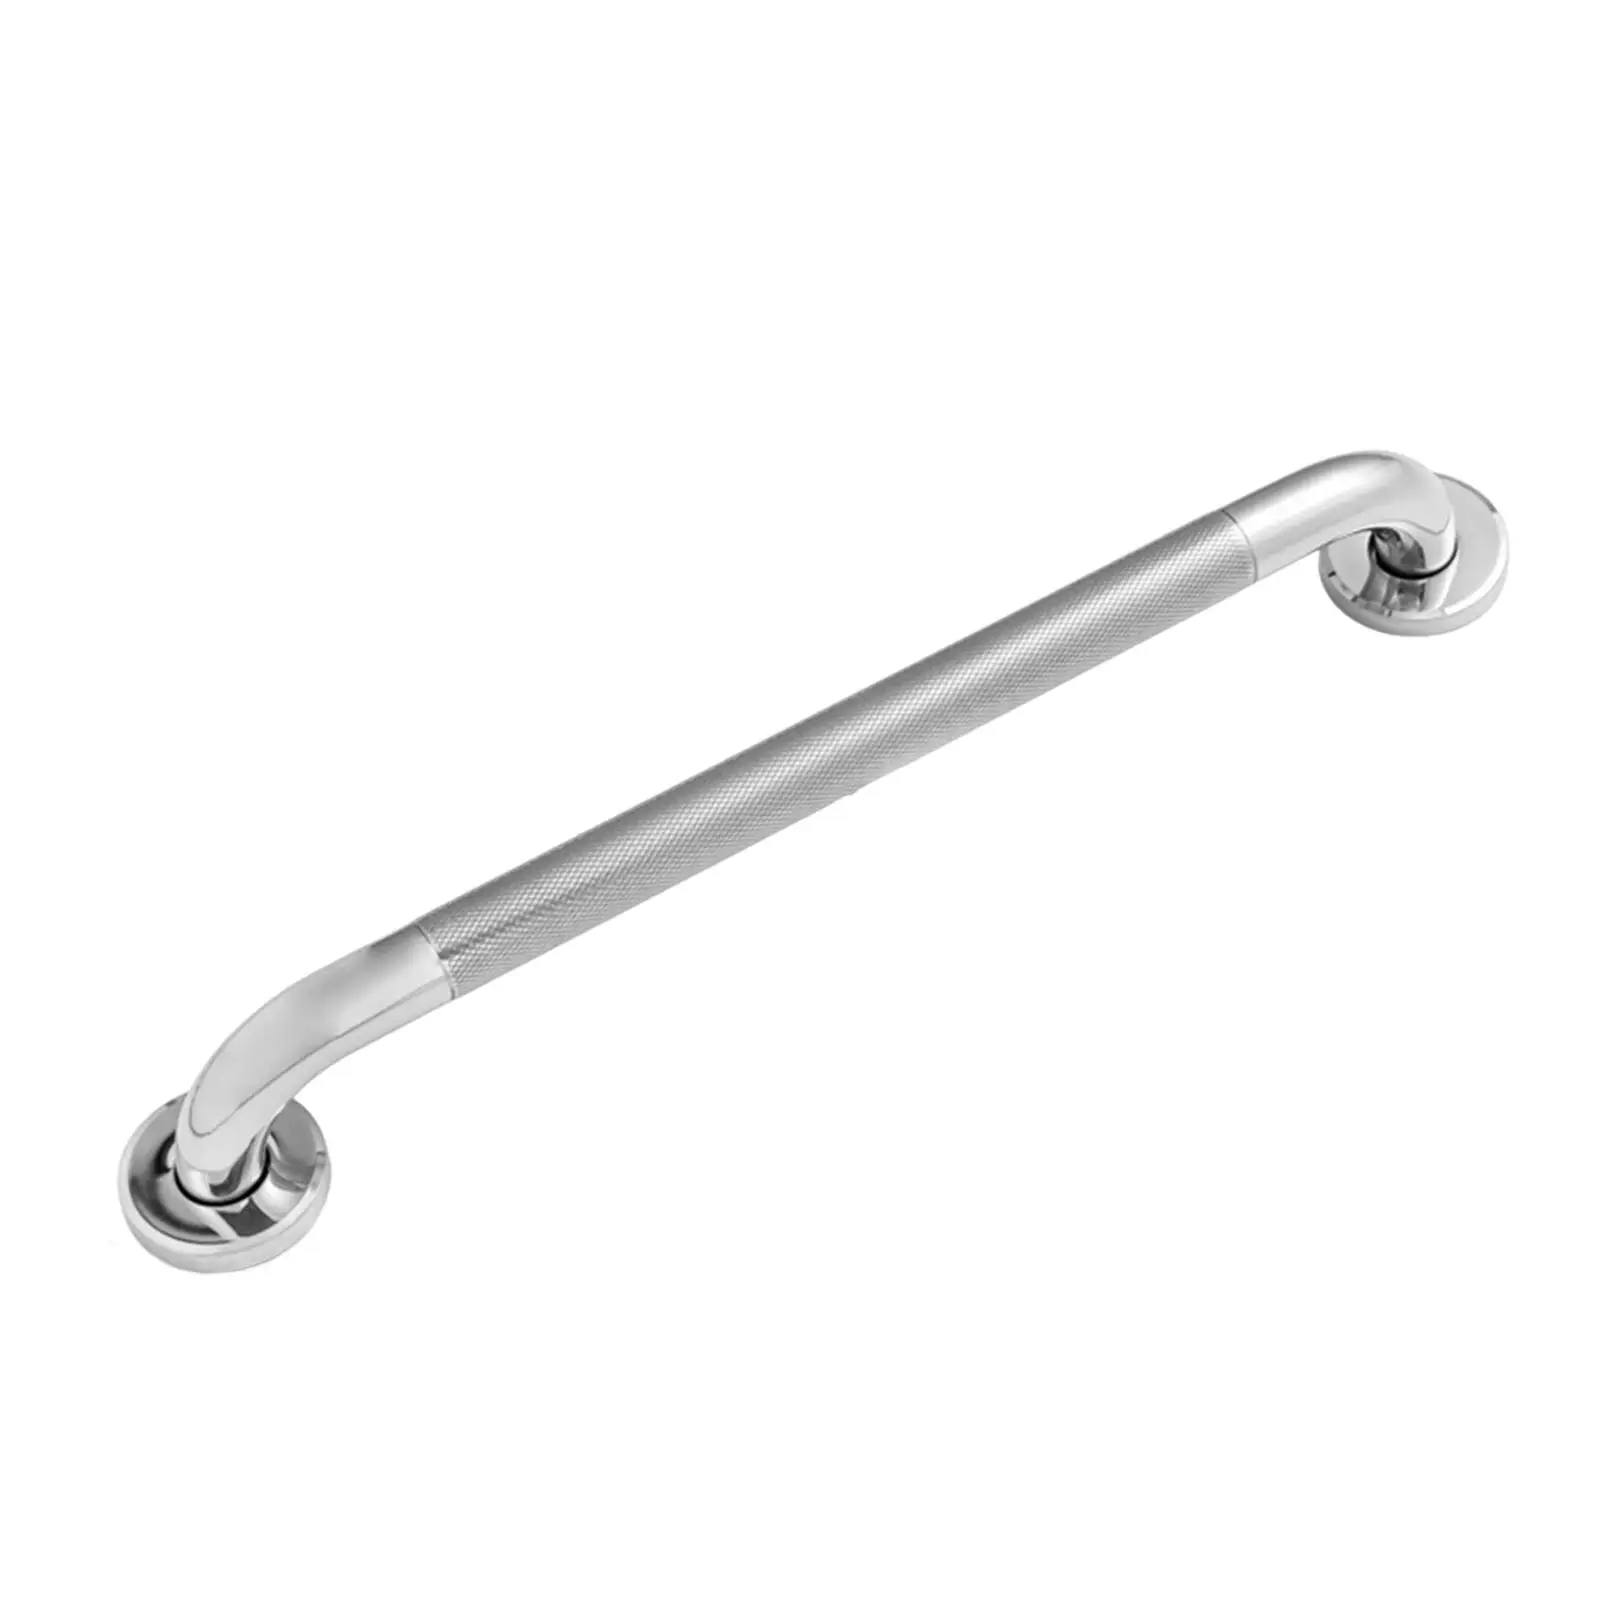 Shower Grab Bar Handle 23.6inch Anti Scratch Thicken Bathroom Balance Bar Safety Hand Rail Support Durable Elderly Senior